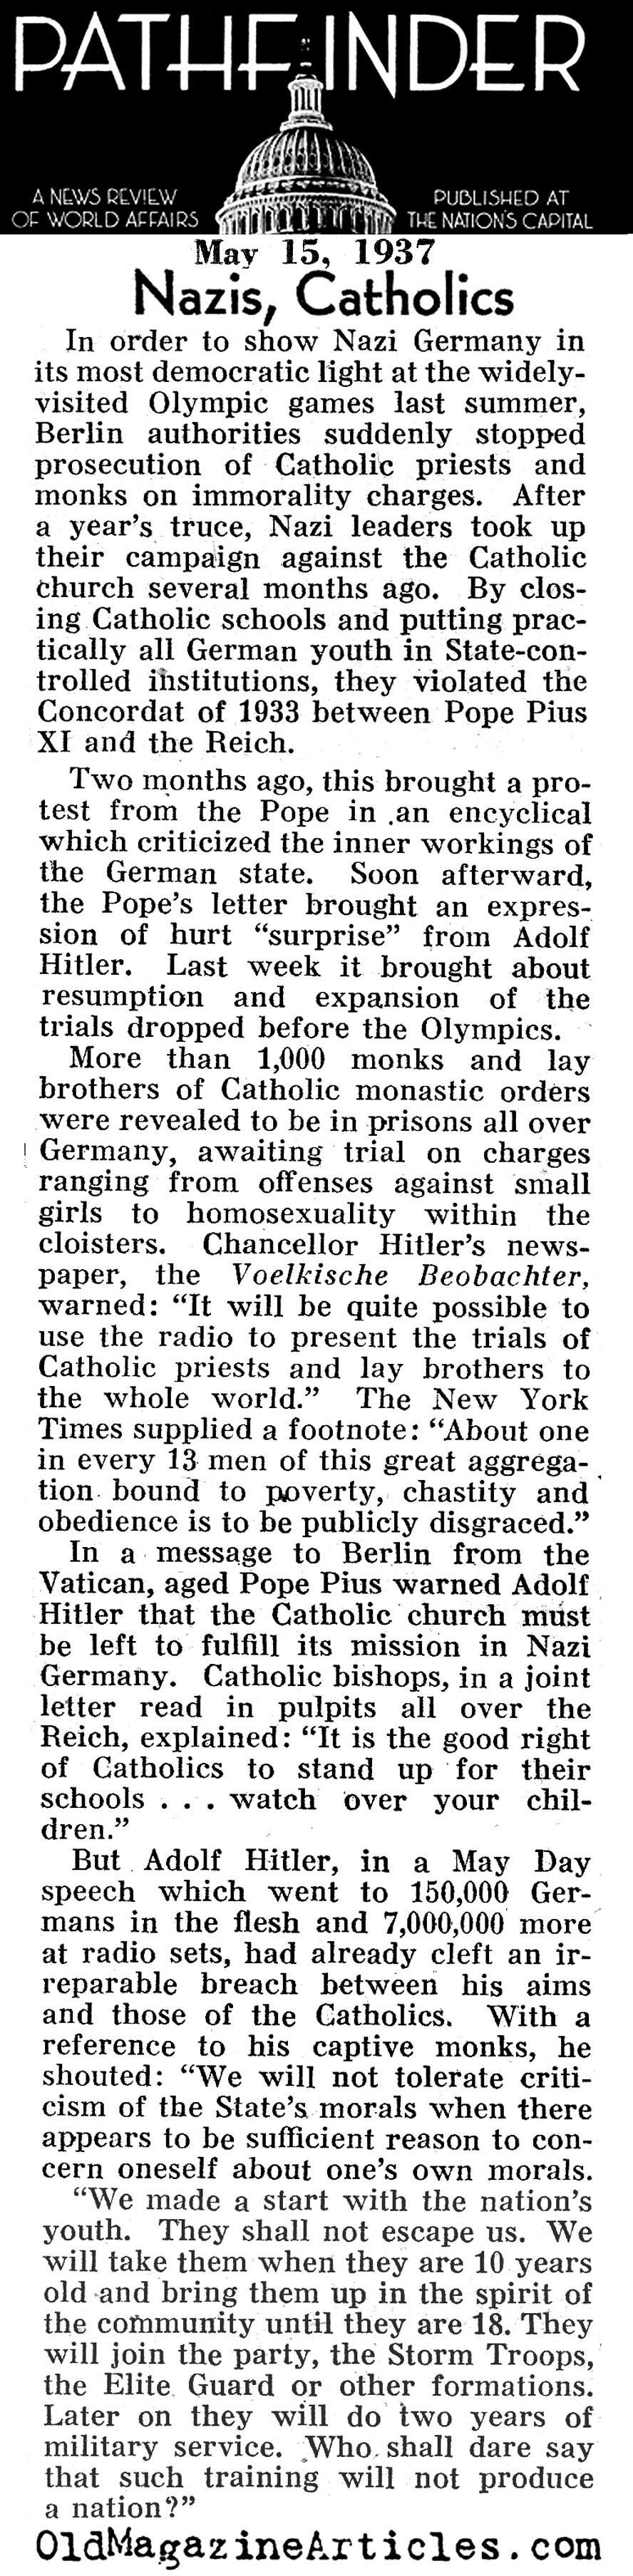 Catholics and Nazis (Pathfinder Magazine, 1937)